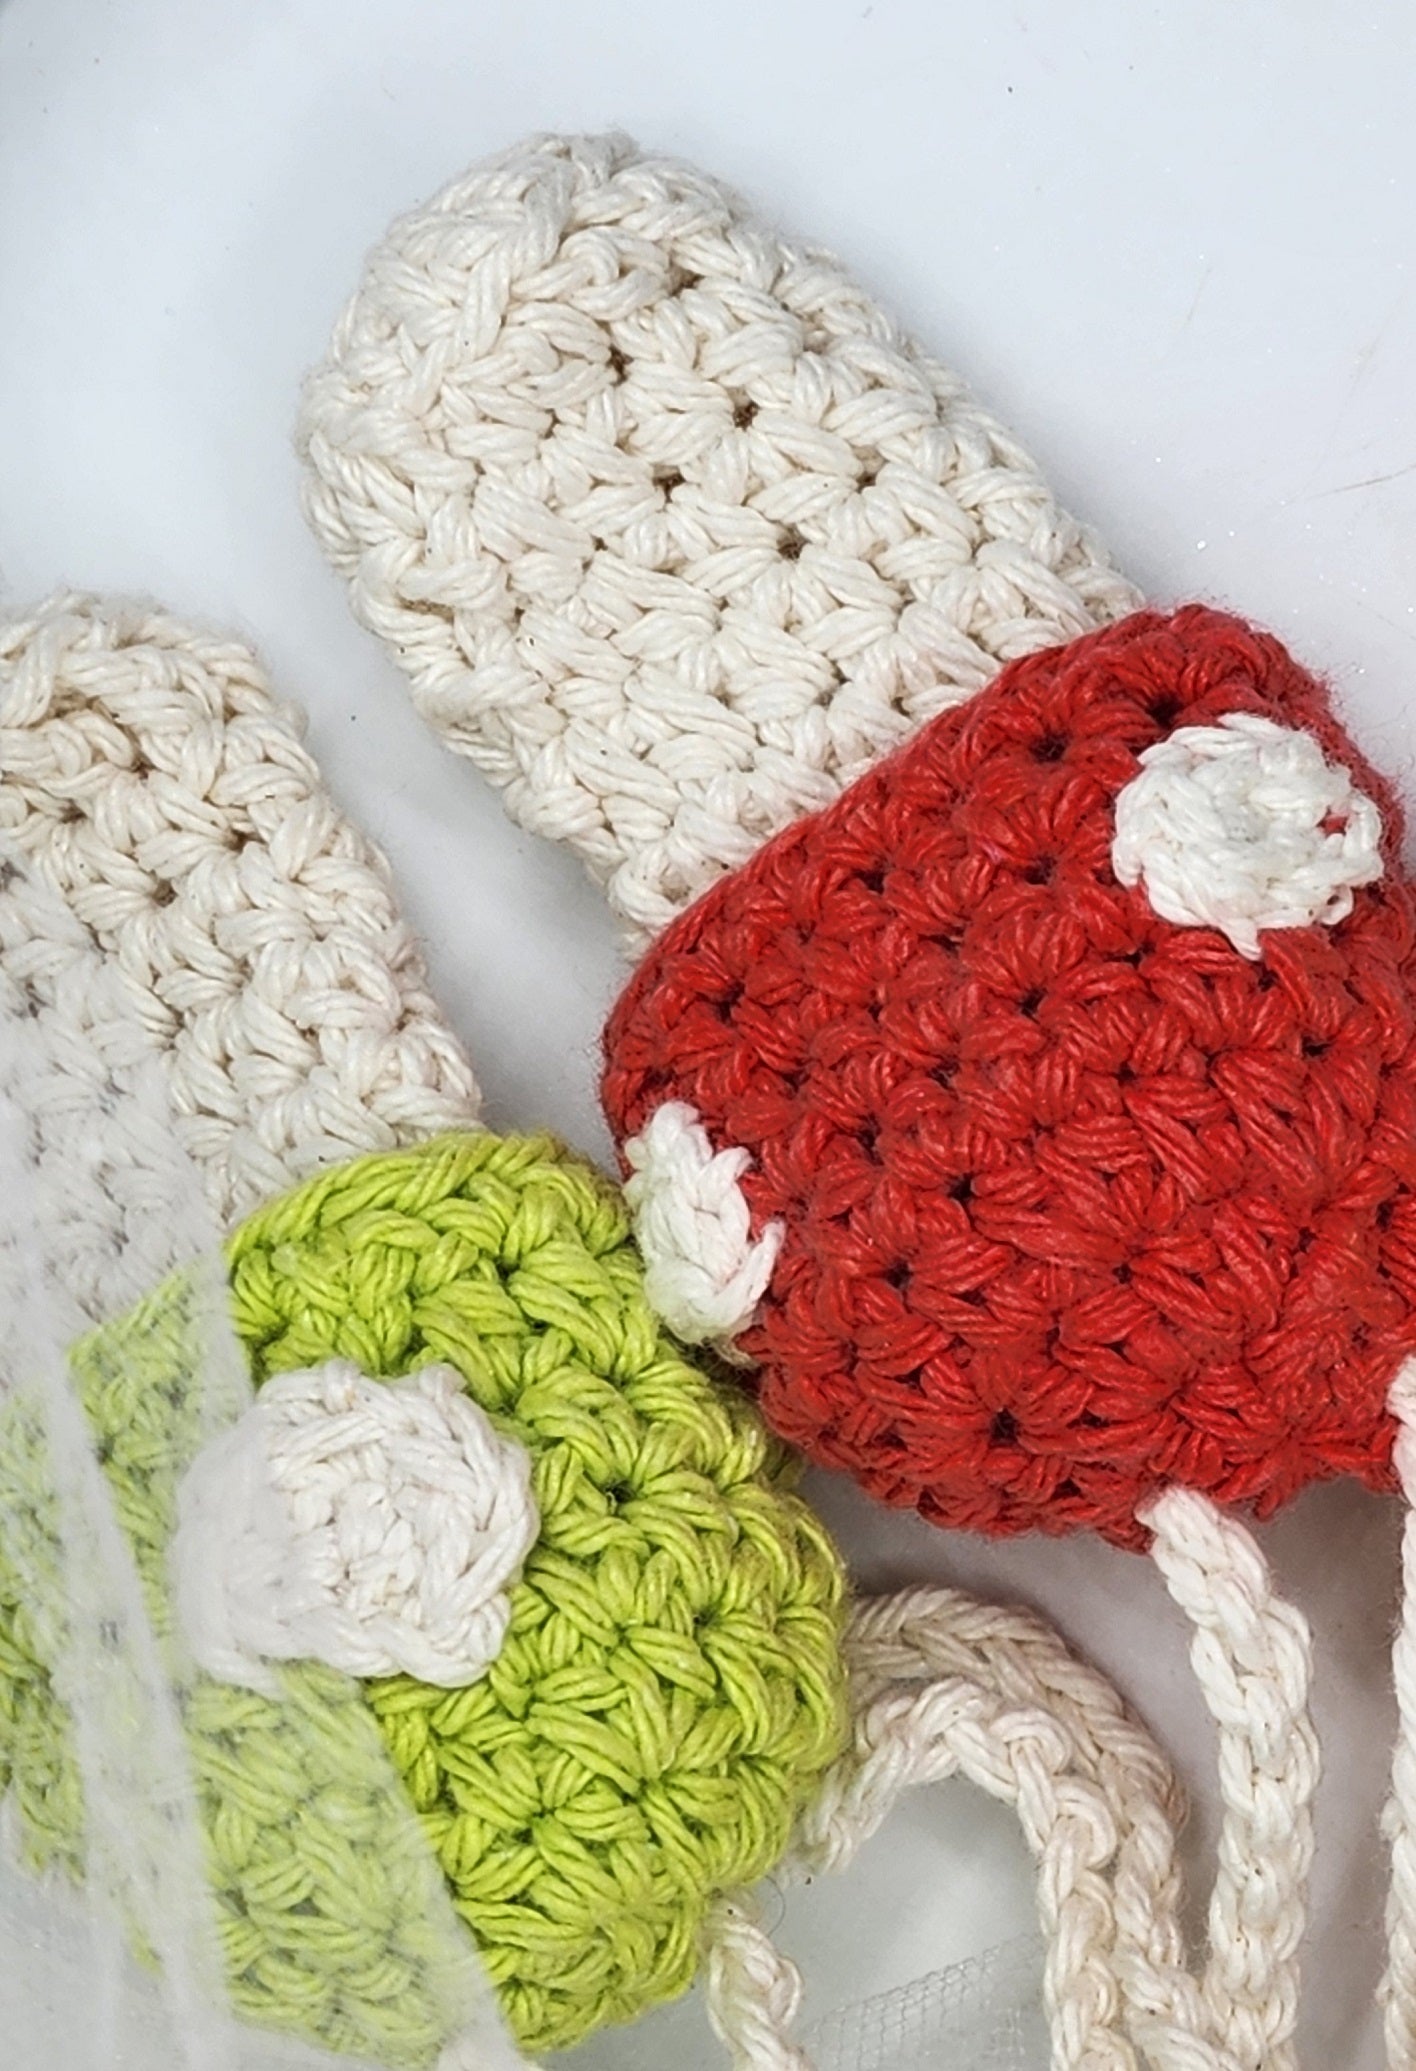 MUSHROOM LIP BALM HOLDER GIFT SET- Handmade Crochet Holder